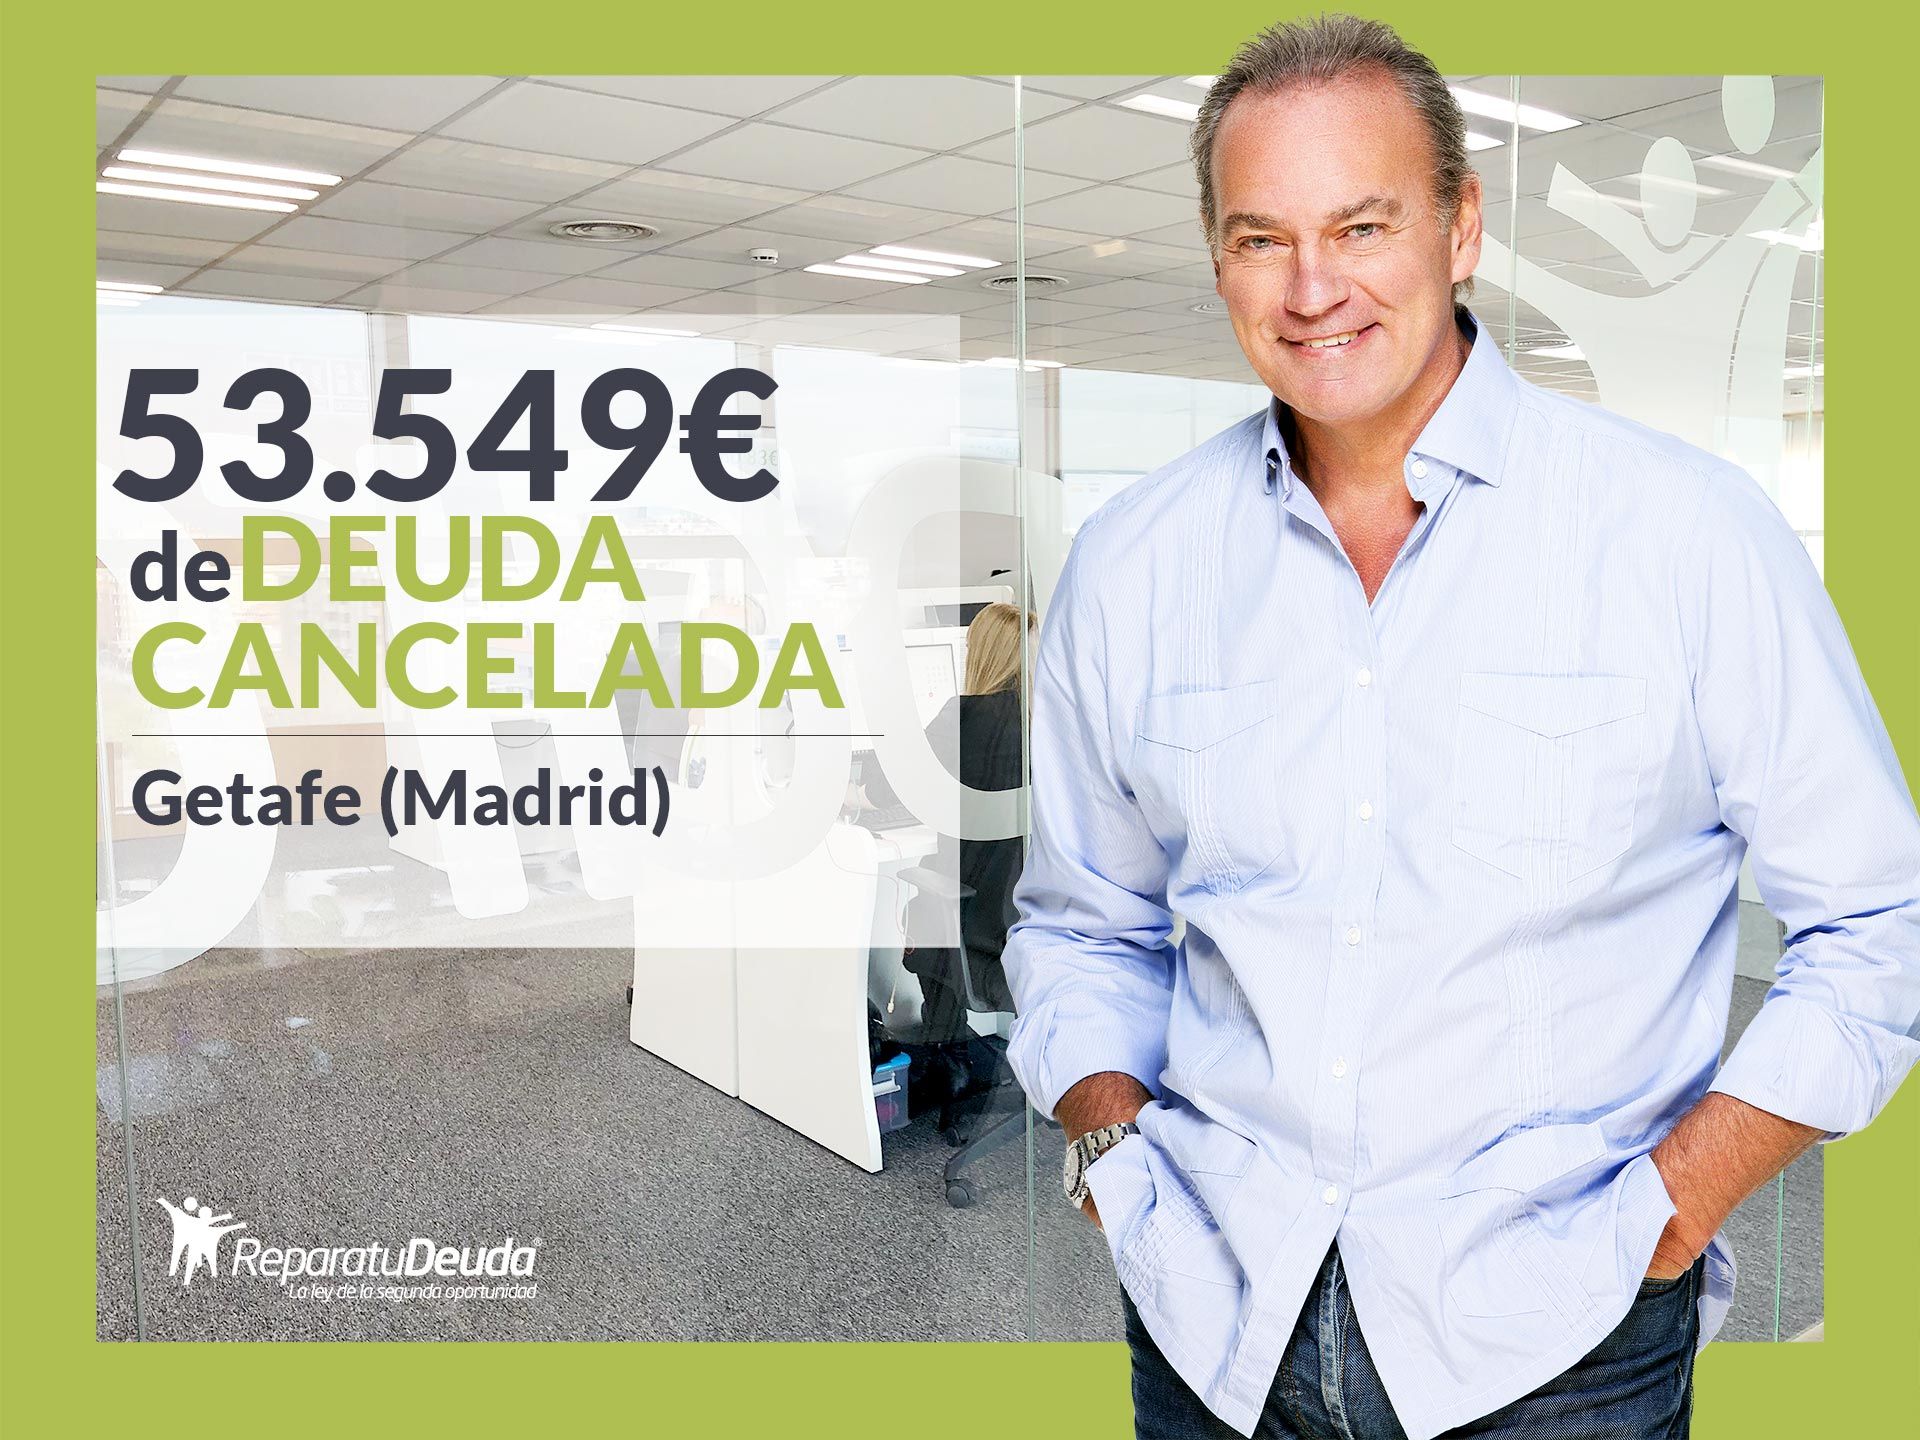 Repara tu Deuda Abogados cancela 53.549? en Getafe (Madrid) con la Ley de la Segunda Oportunidad